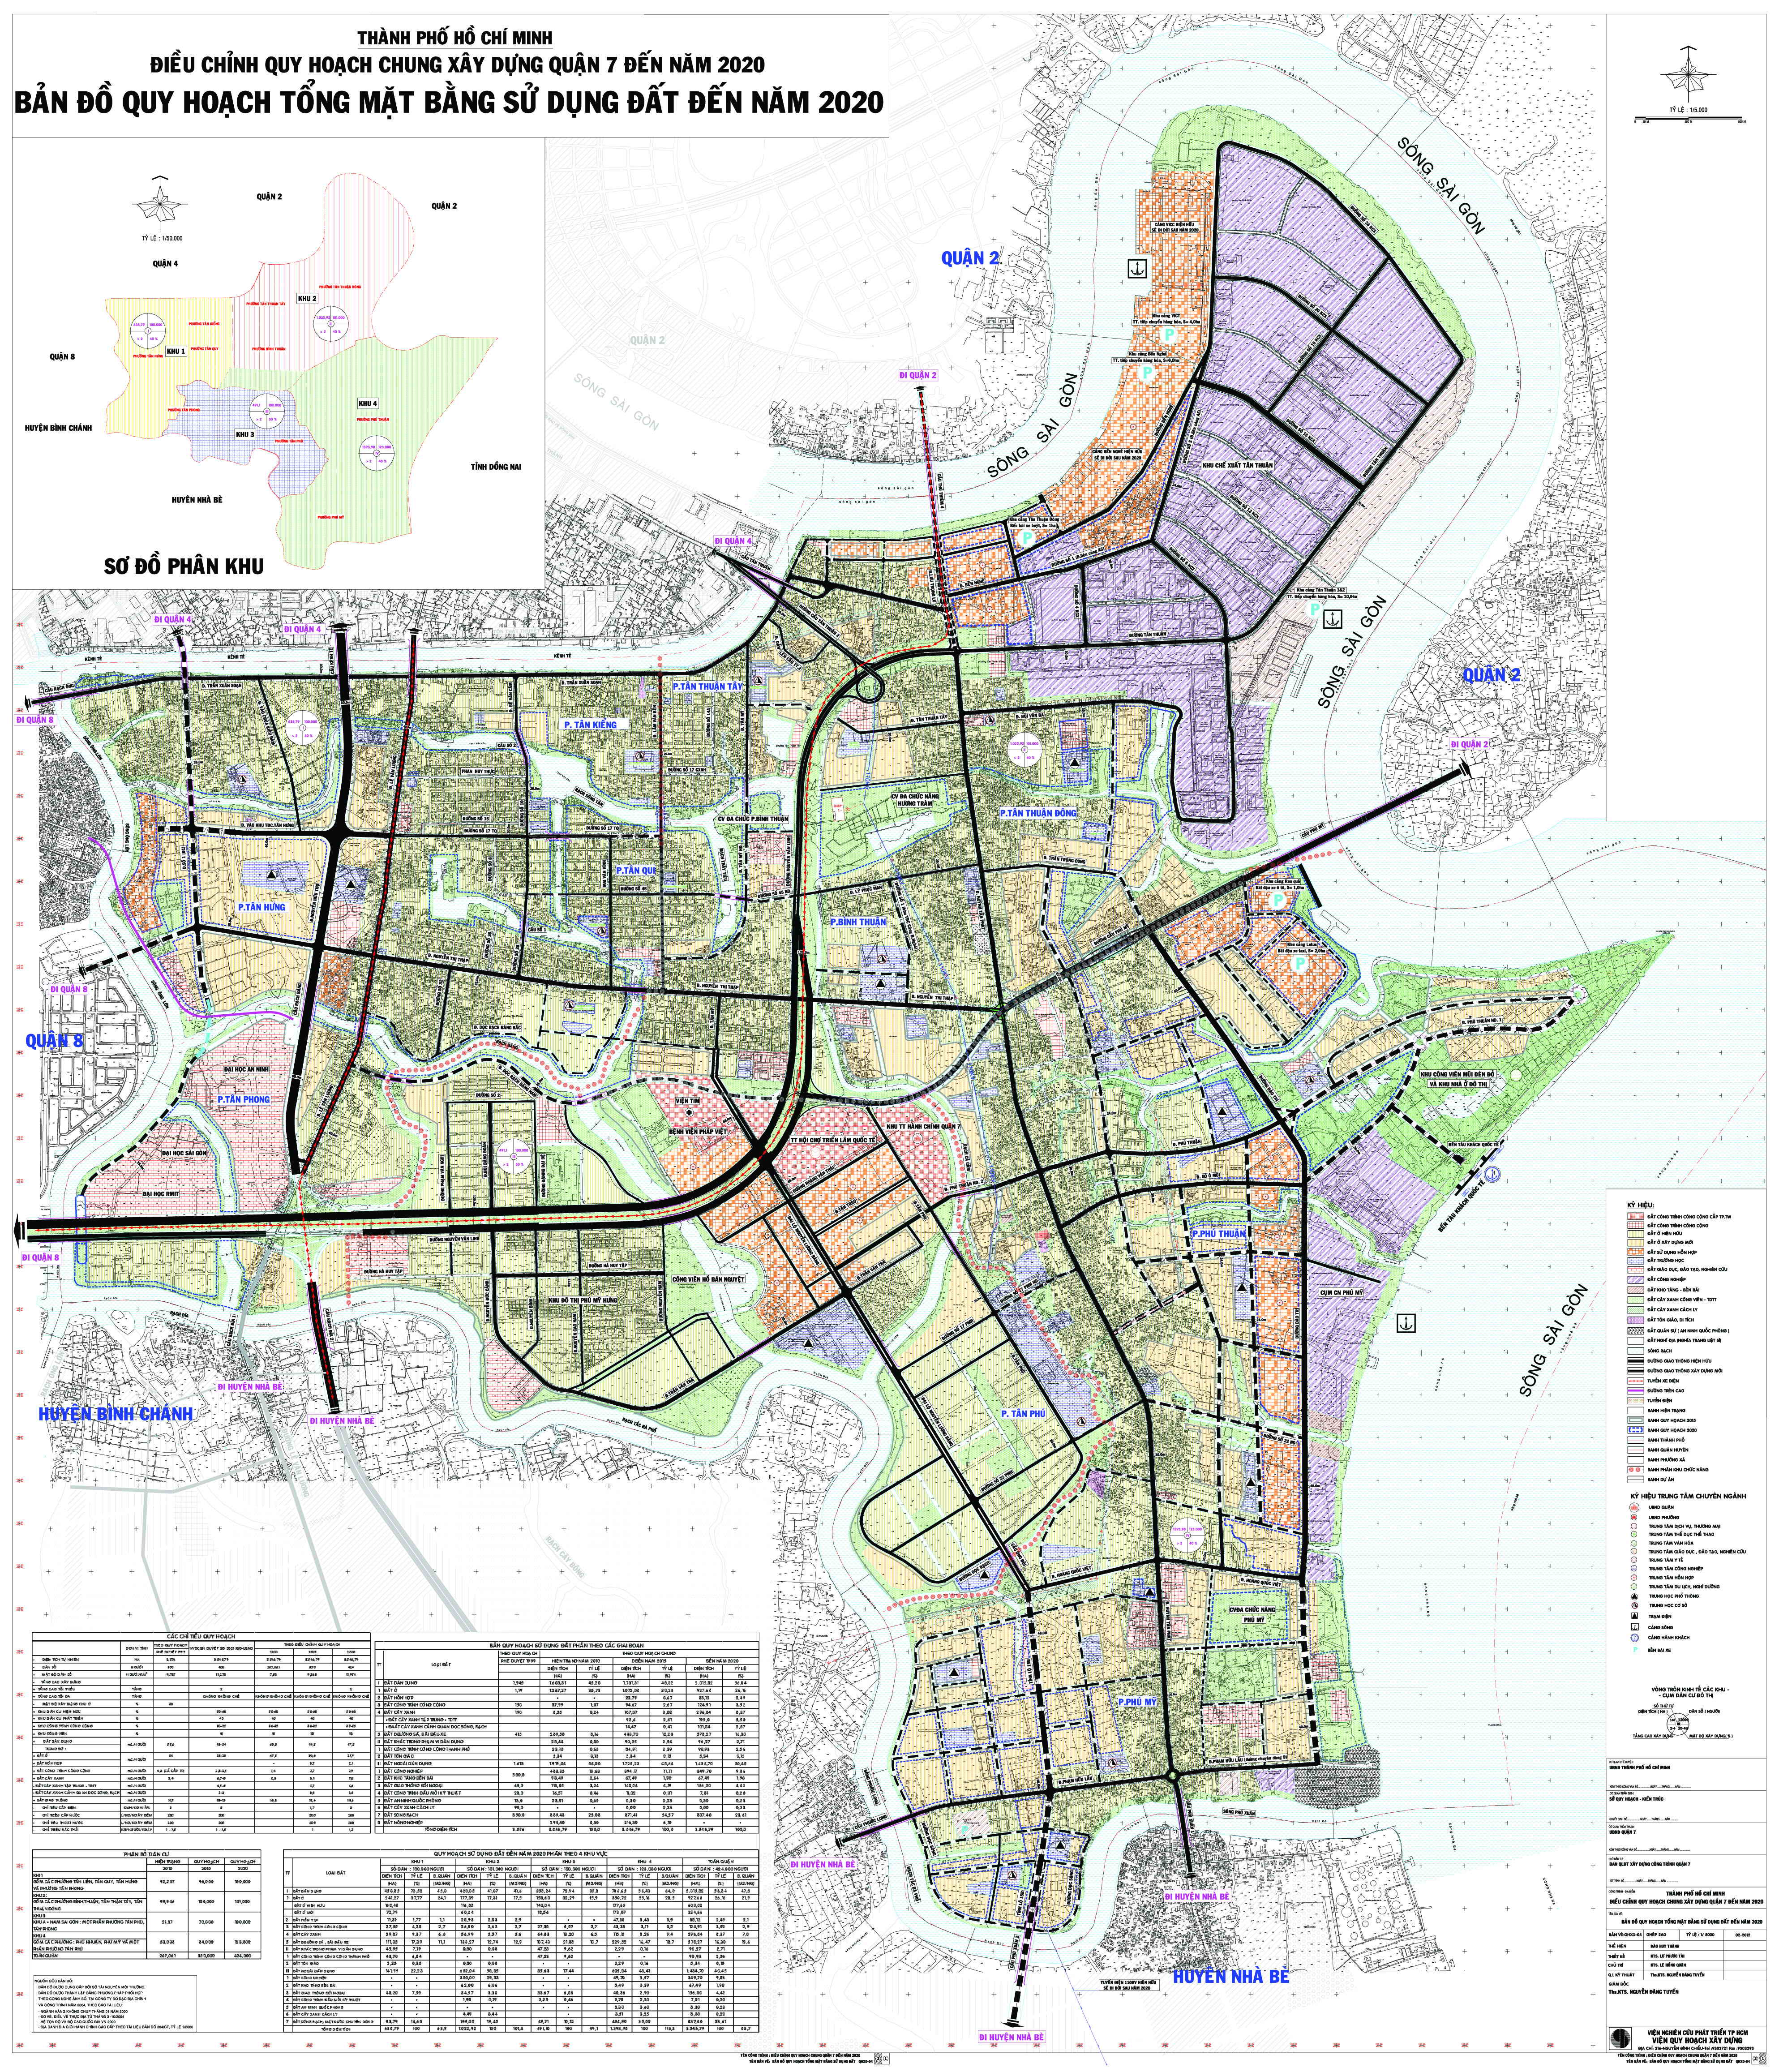 Bản đồ hành chính quận 7 năm 2024 được thiết kế với mục đích tối ưu hóa các nguồn lực và cải thiện chất lượng cuộc sống cho cư dân. Với nhiều khu phức hợp đa chức năng và dịch vụ tiện ích, quận 7 sẽ trở thành một trong những địa điểm hấp dẫn nhất của TP. Hồ Chí Minh. Hãy cùng tìm hiểu bản đồ hành chính Quận 7 để hiểu rõ hơn về khu vực này.